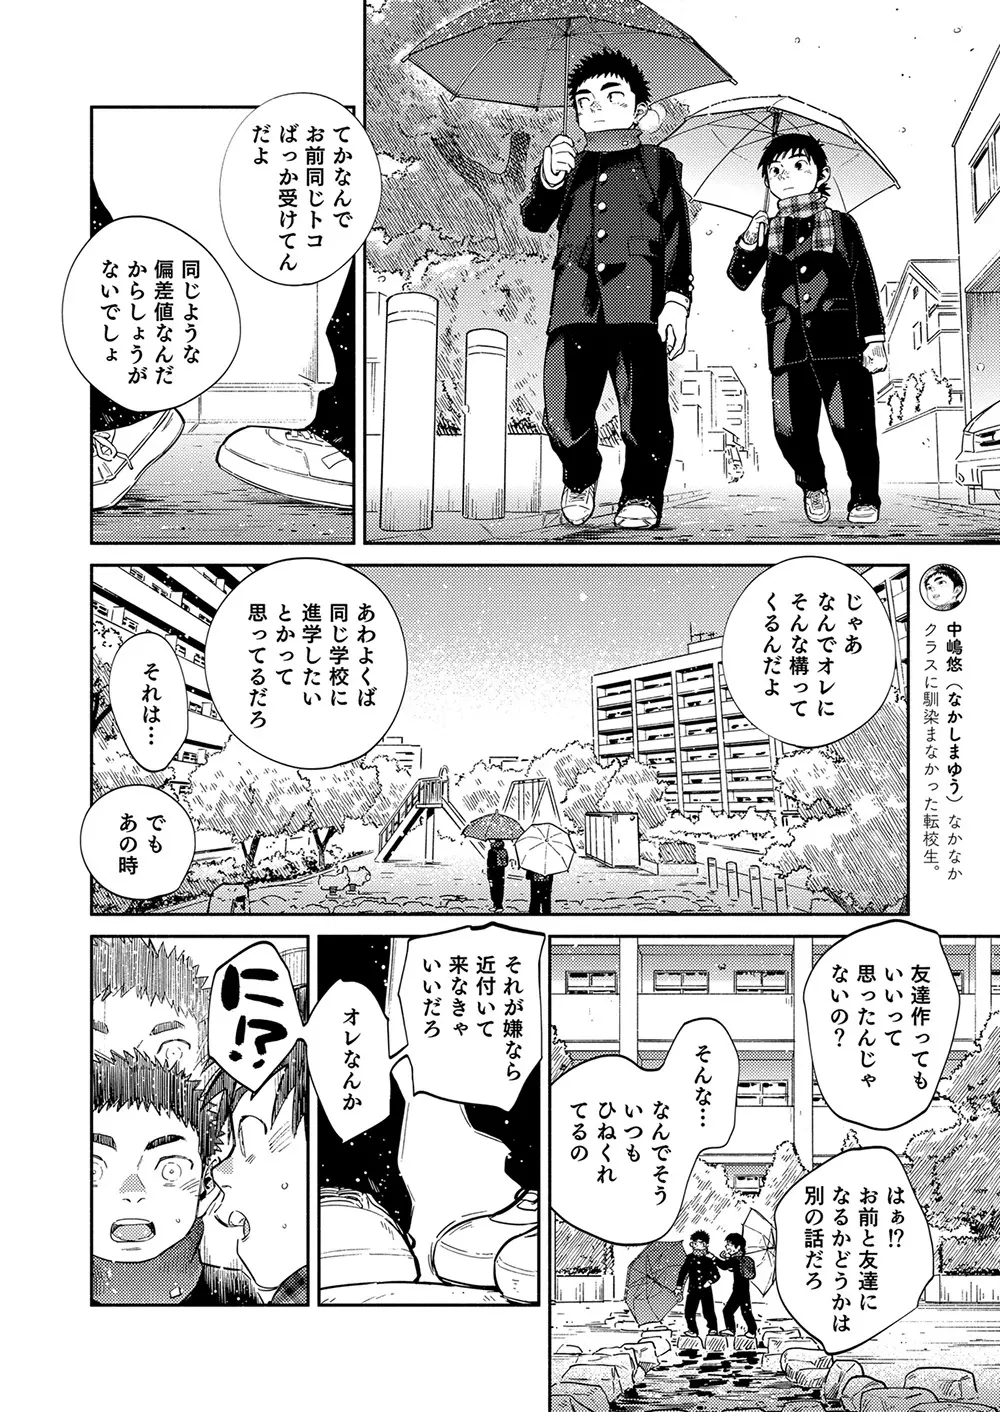 漫画少年ズーム vol.35 17ページ